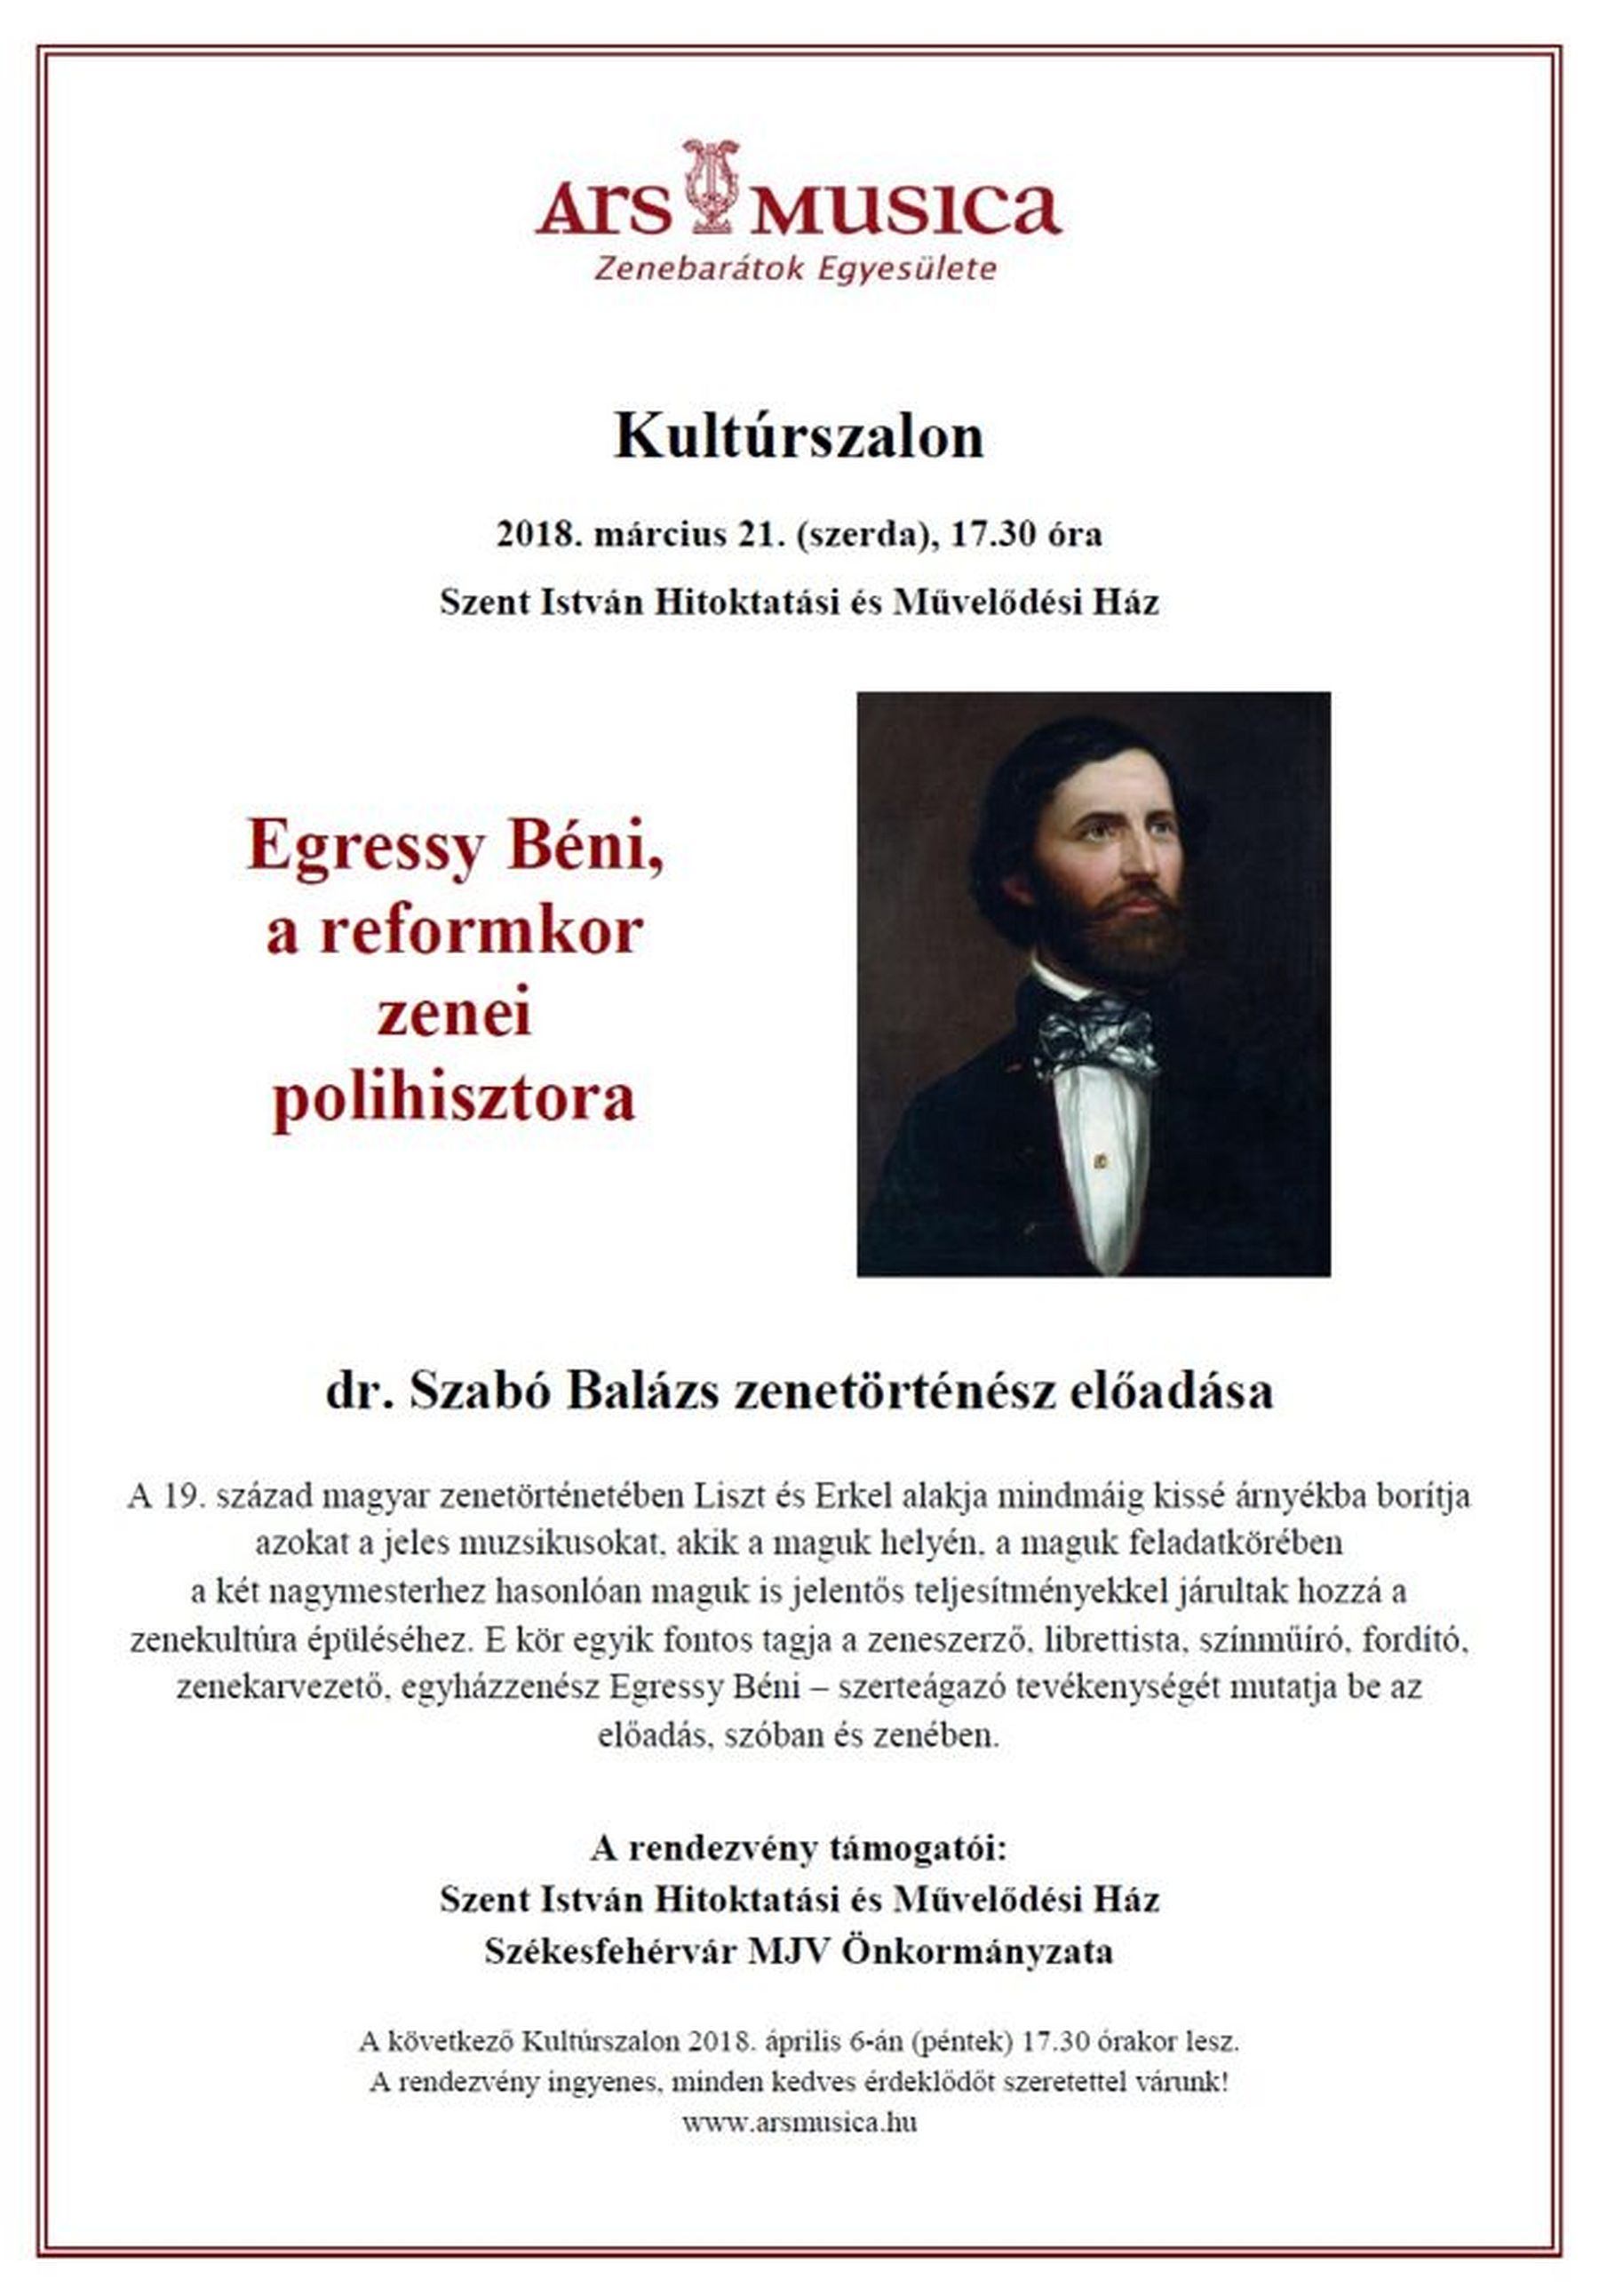 Kultúrszalon - Dr. Szabó Balázs előadása Egressy Béniről